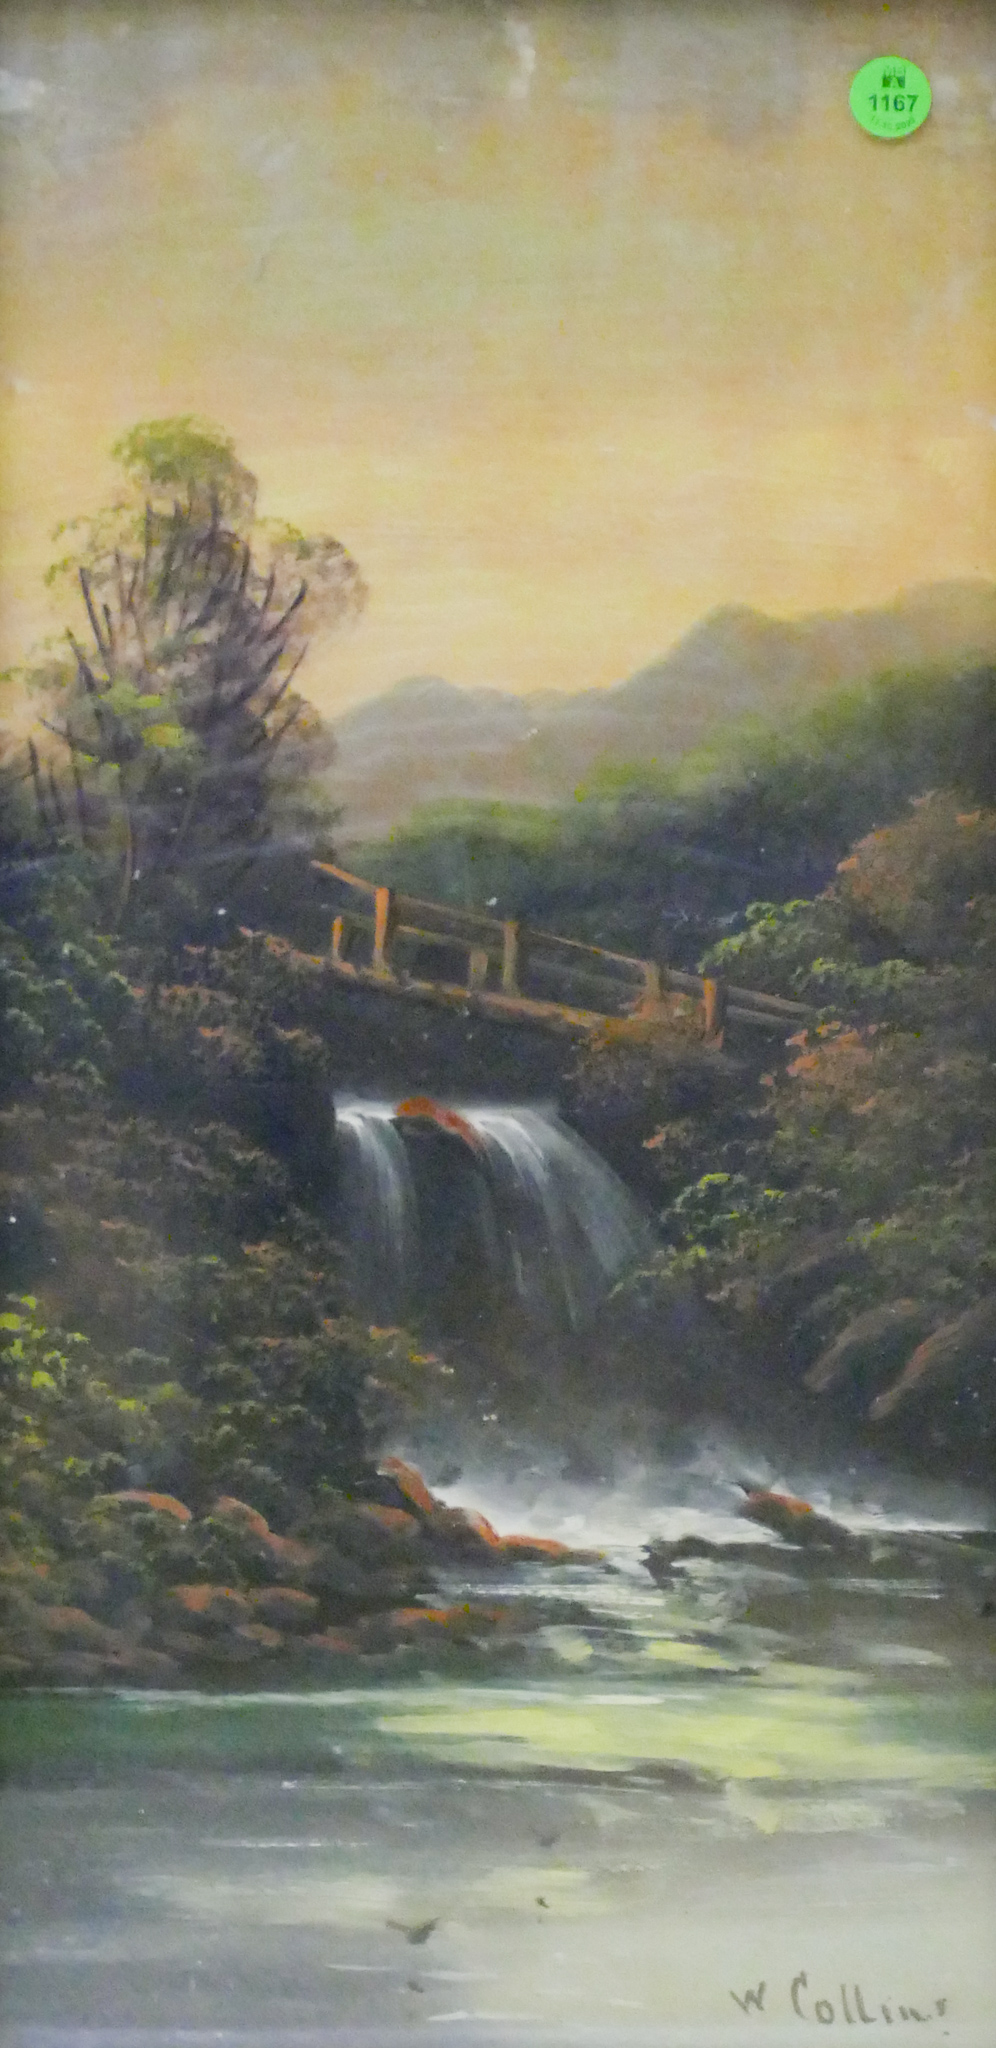 Antique W. Collins Landscape with